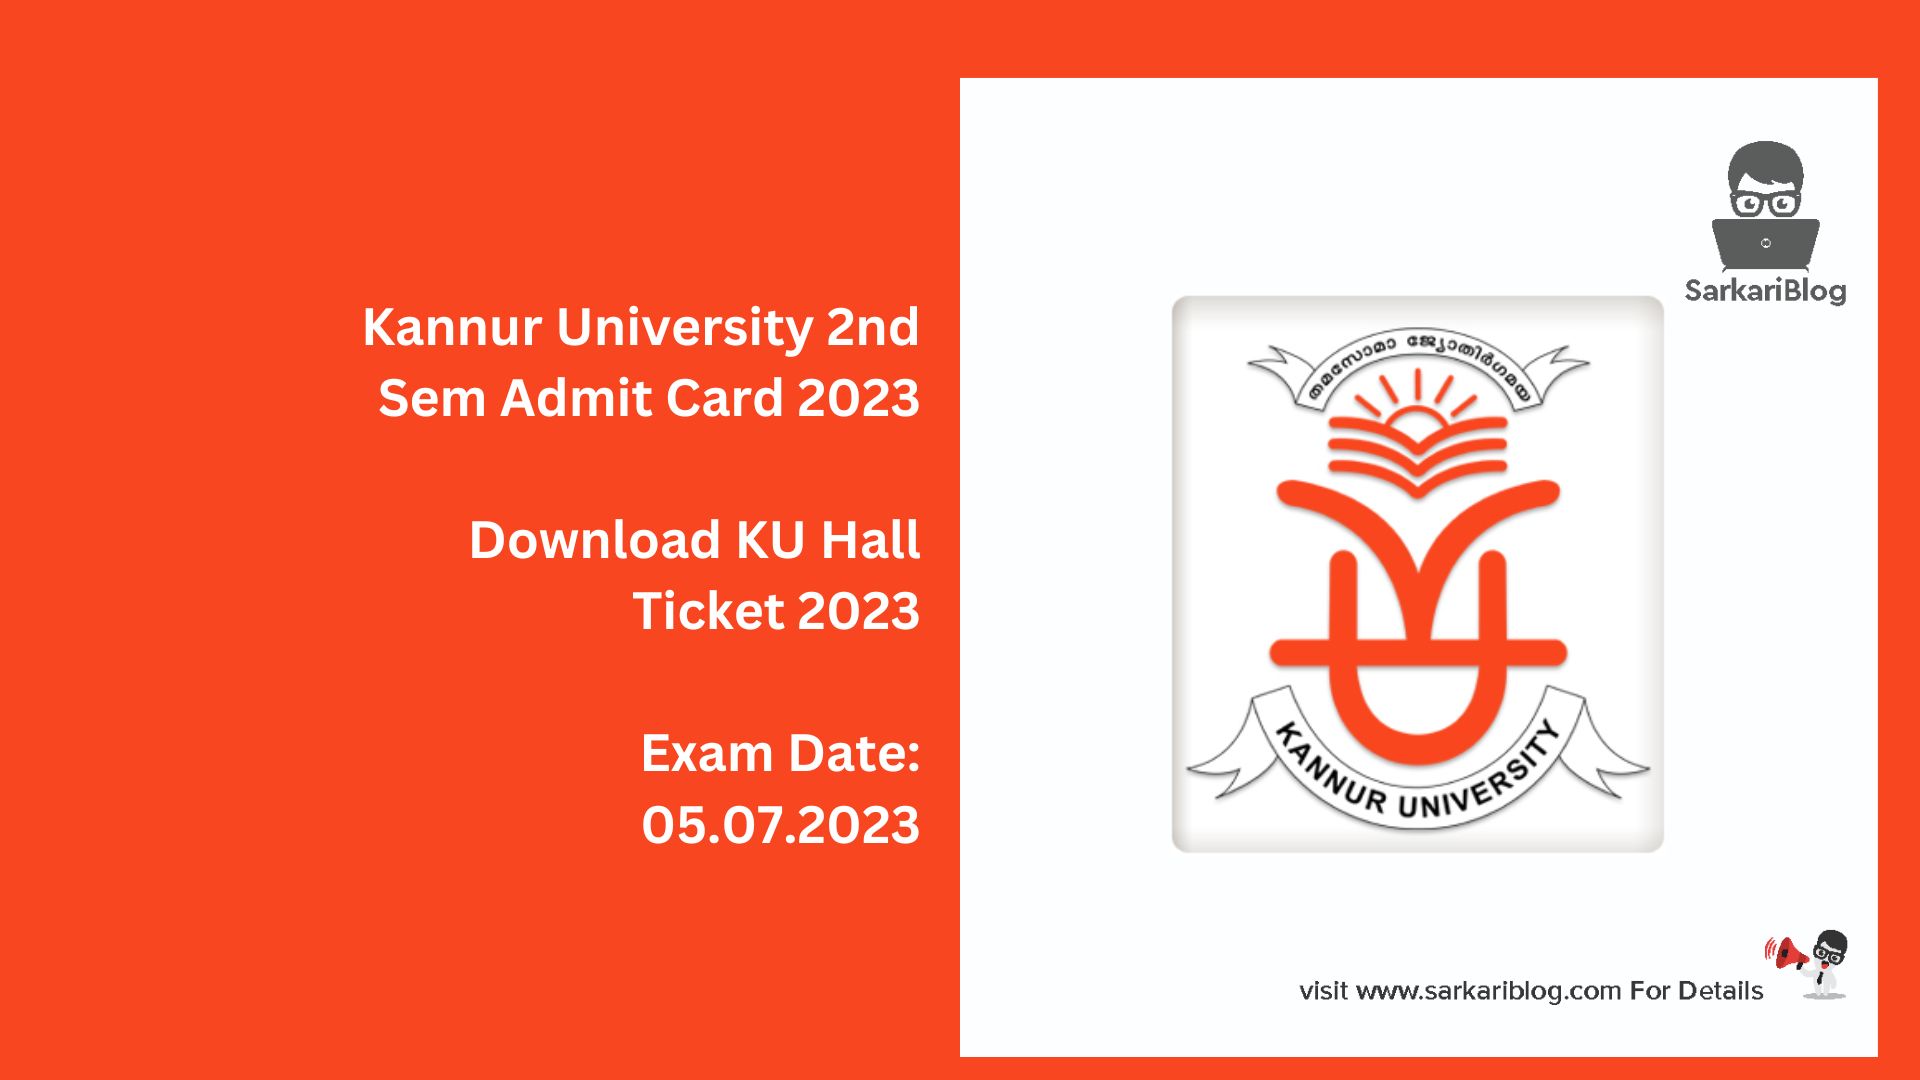 Kannur University 2nd Sem Admit Card 2023